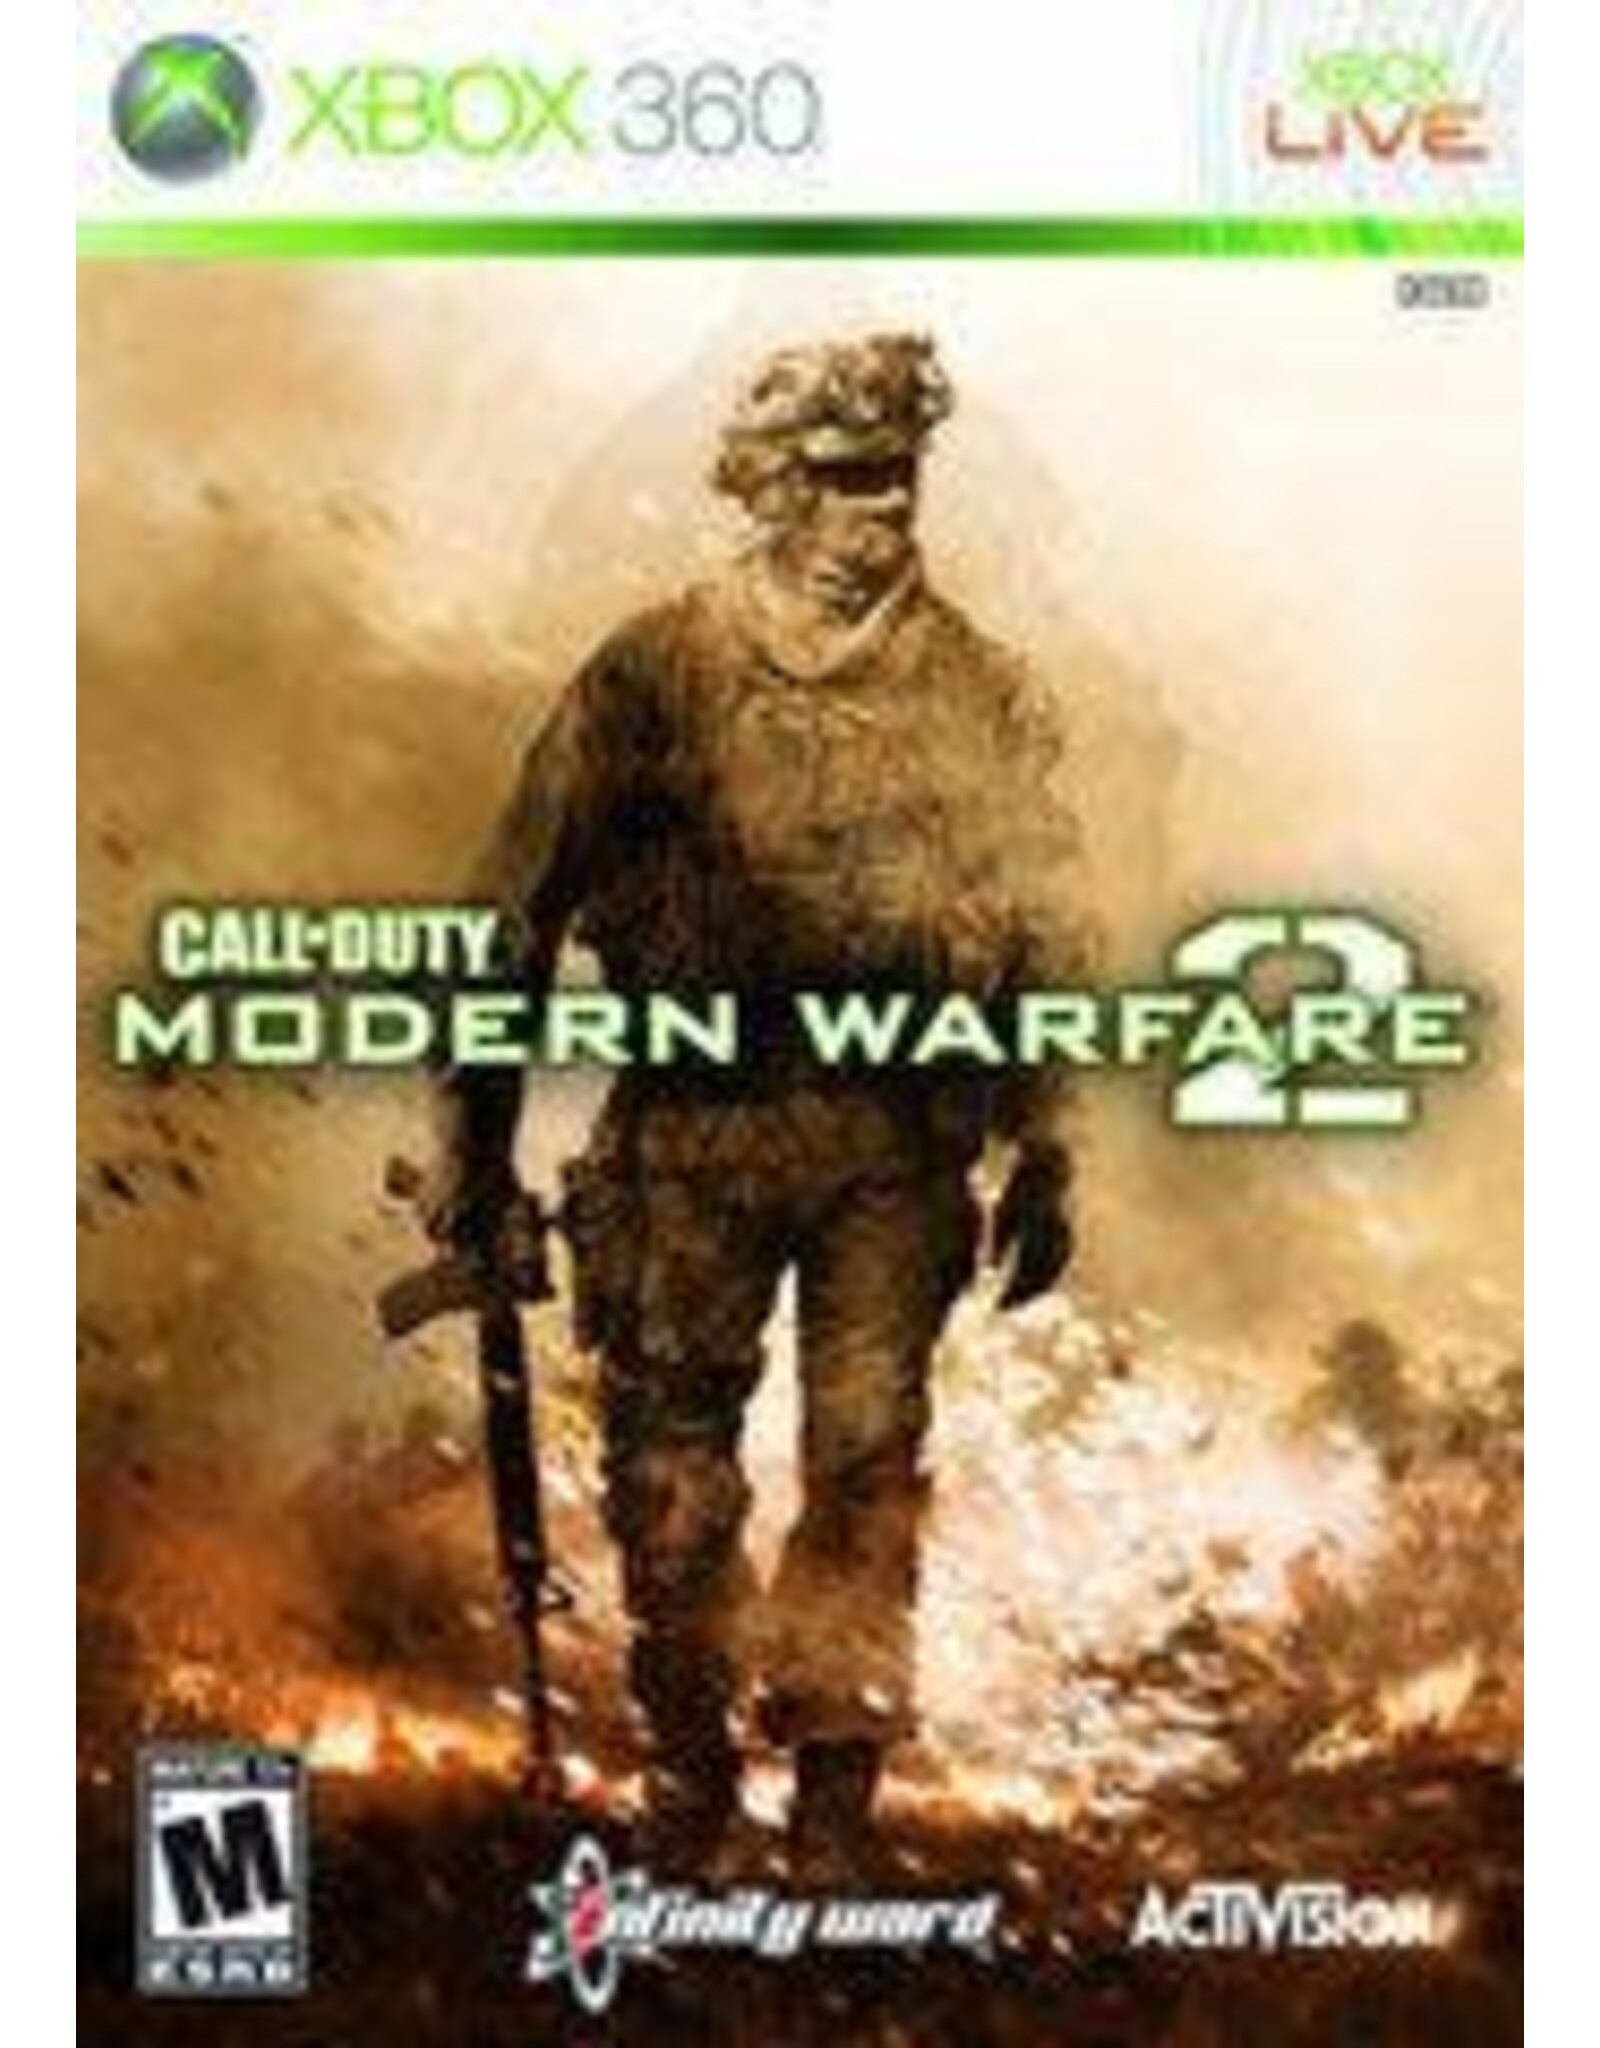 Xbox 360 Call of Duty Modern Warfare 2 (CiB, Damaged Sleeve)